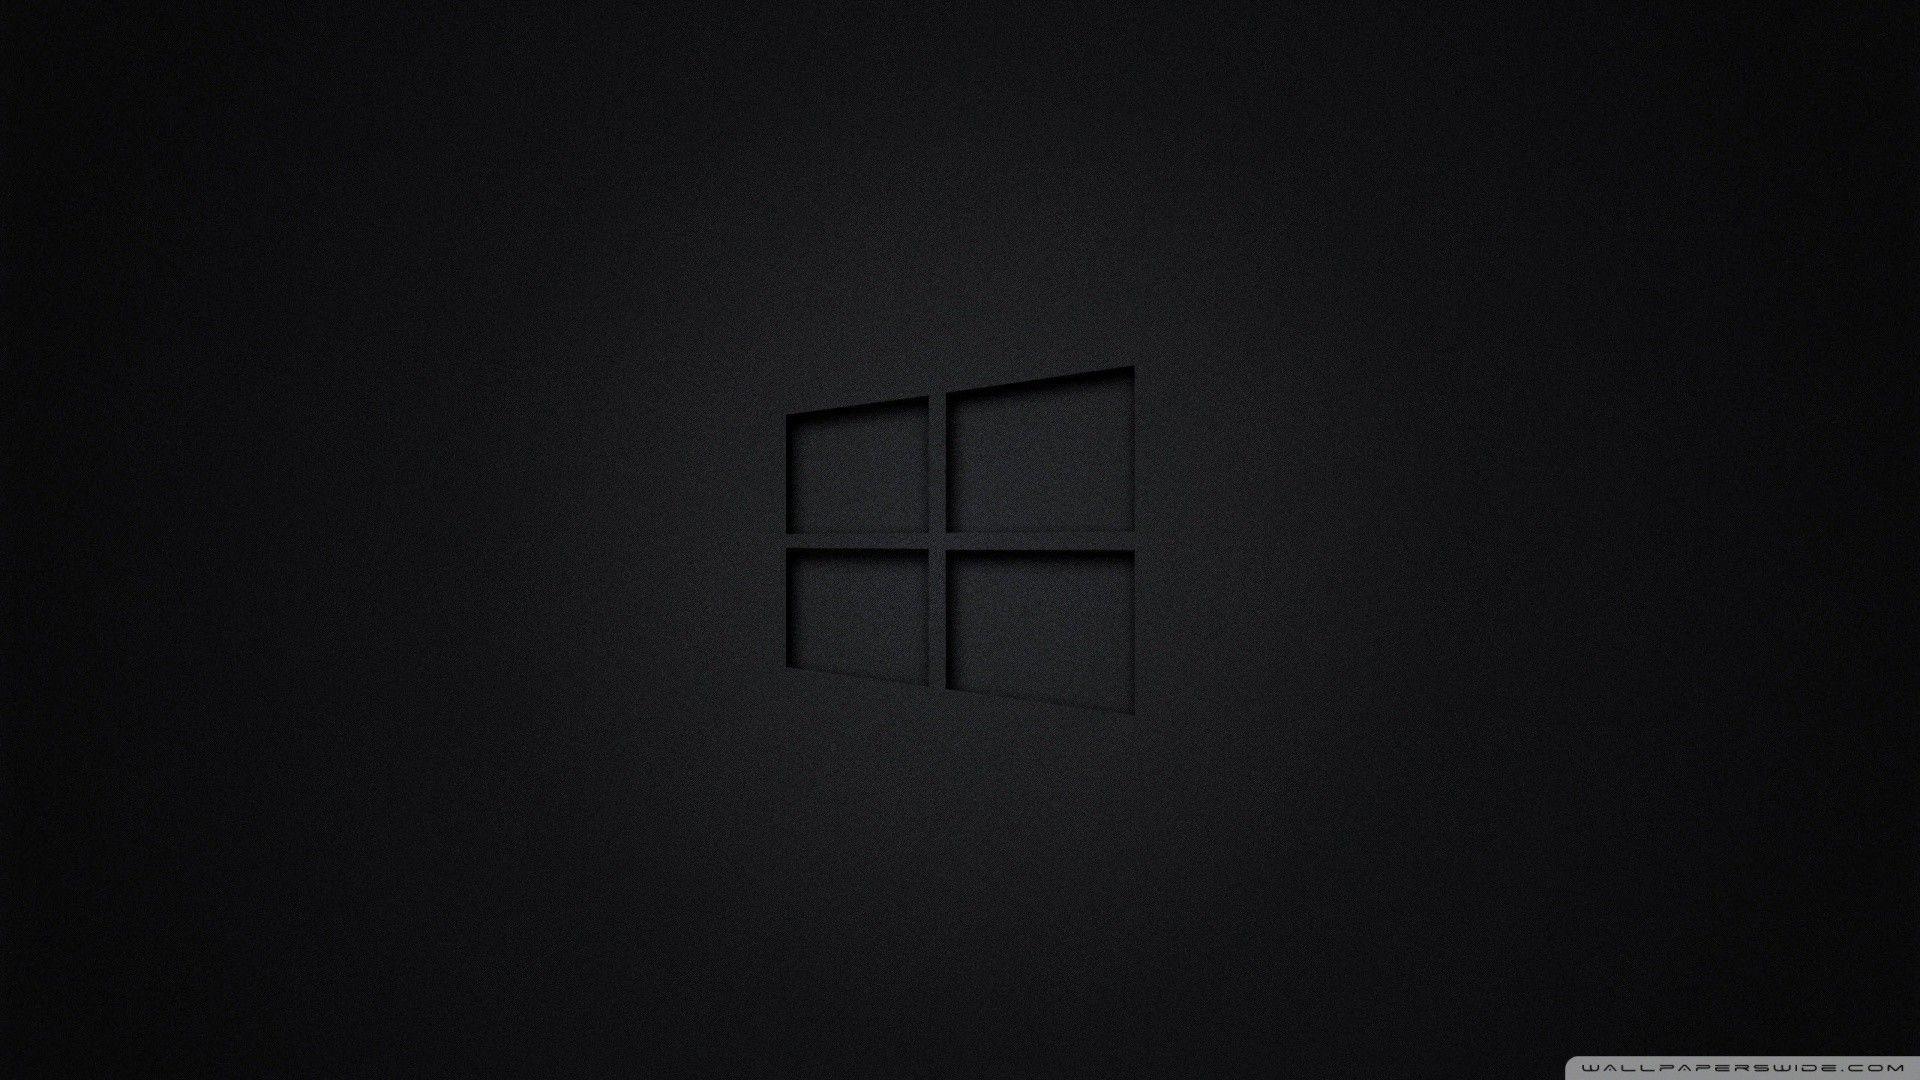 Bộ sưu tập hình nền Windows đen sẽ khiến cho máy tính của bạn trở nên cực kì đặc biệt và bí ẩn. Với tổng hợp hình nền độc đáo và cảm xúc, bạn sẽ có nhiều lựa chọn để thay đổi màn hình Desktop của mình.